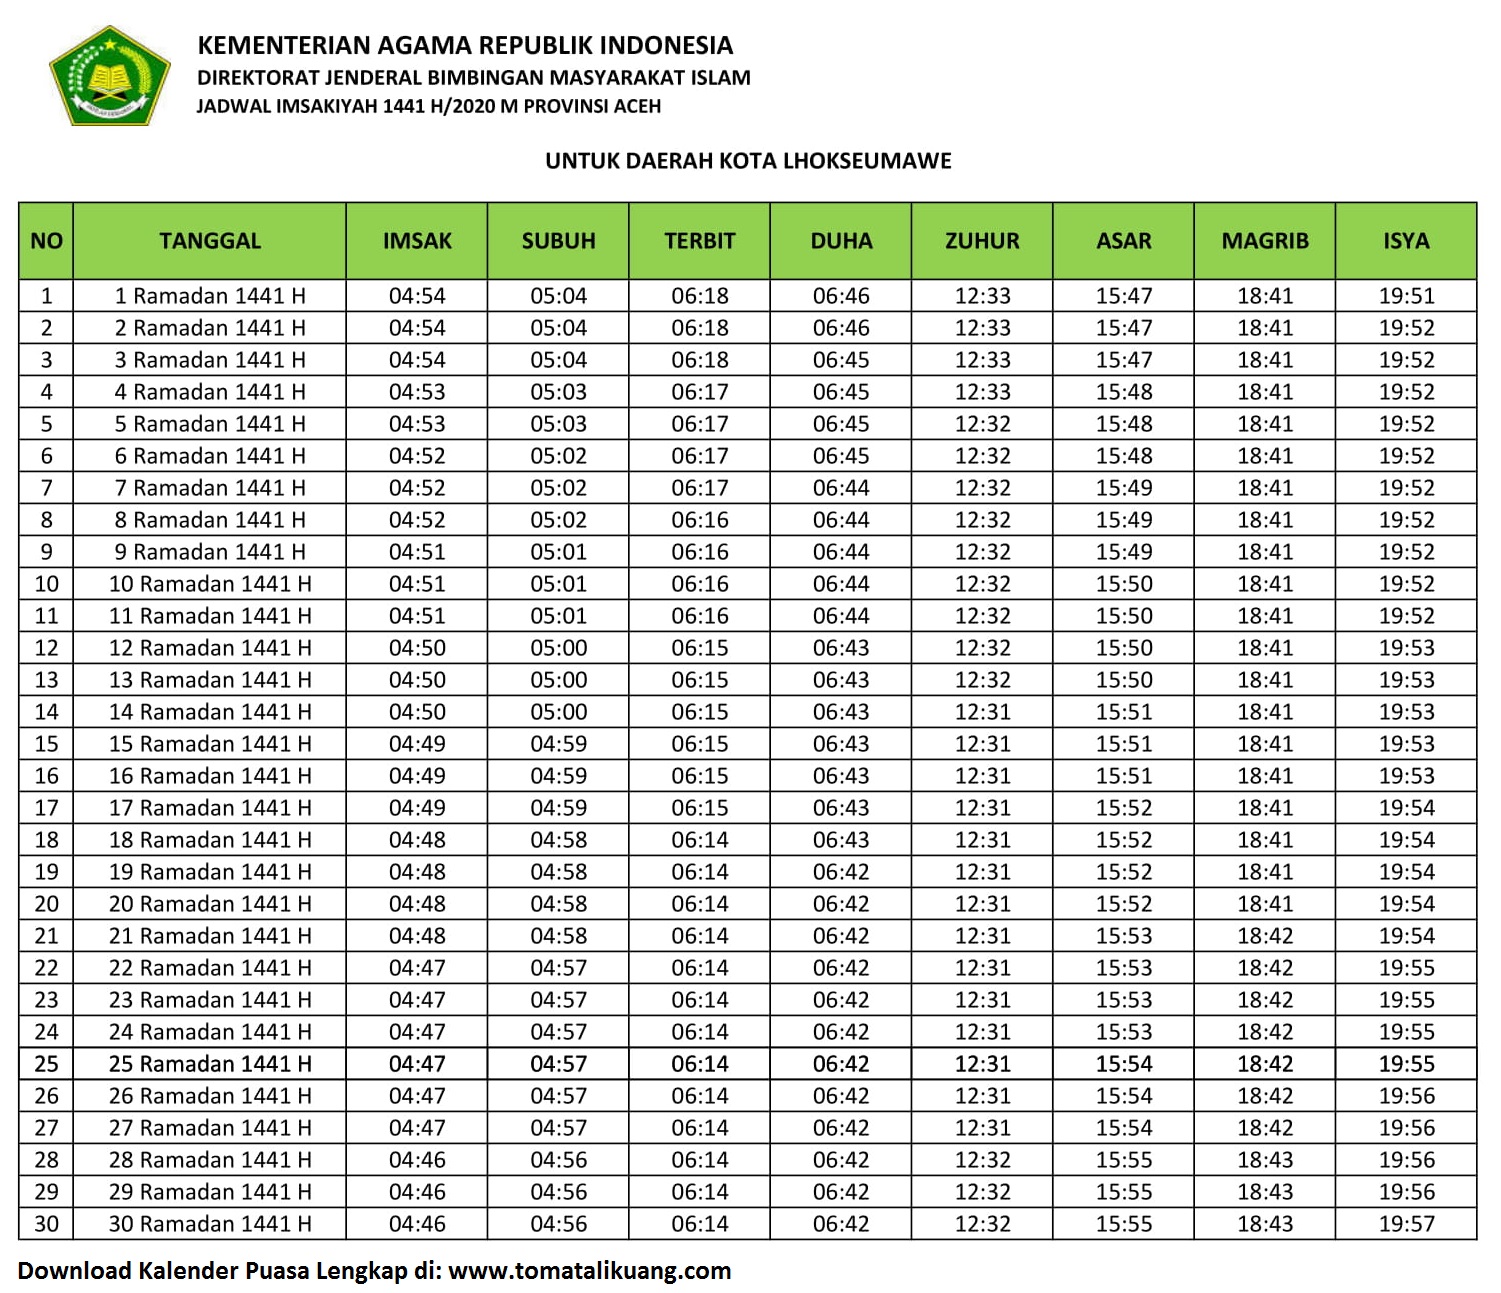 Jadwal Imsakiyah & Buka Puasa Kota Lhokseumawe 2020 / 1441 H (Kalender